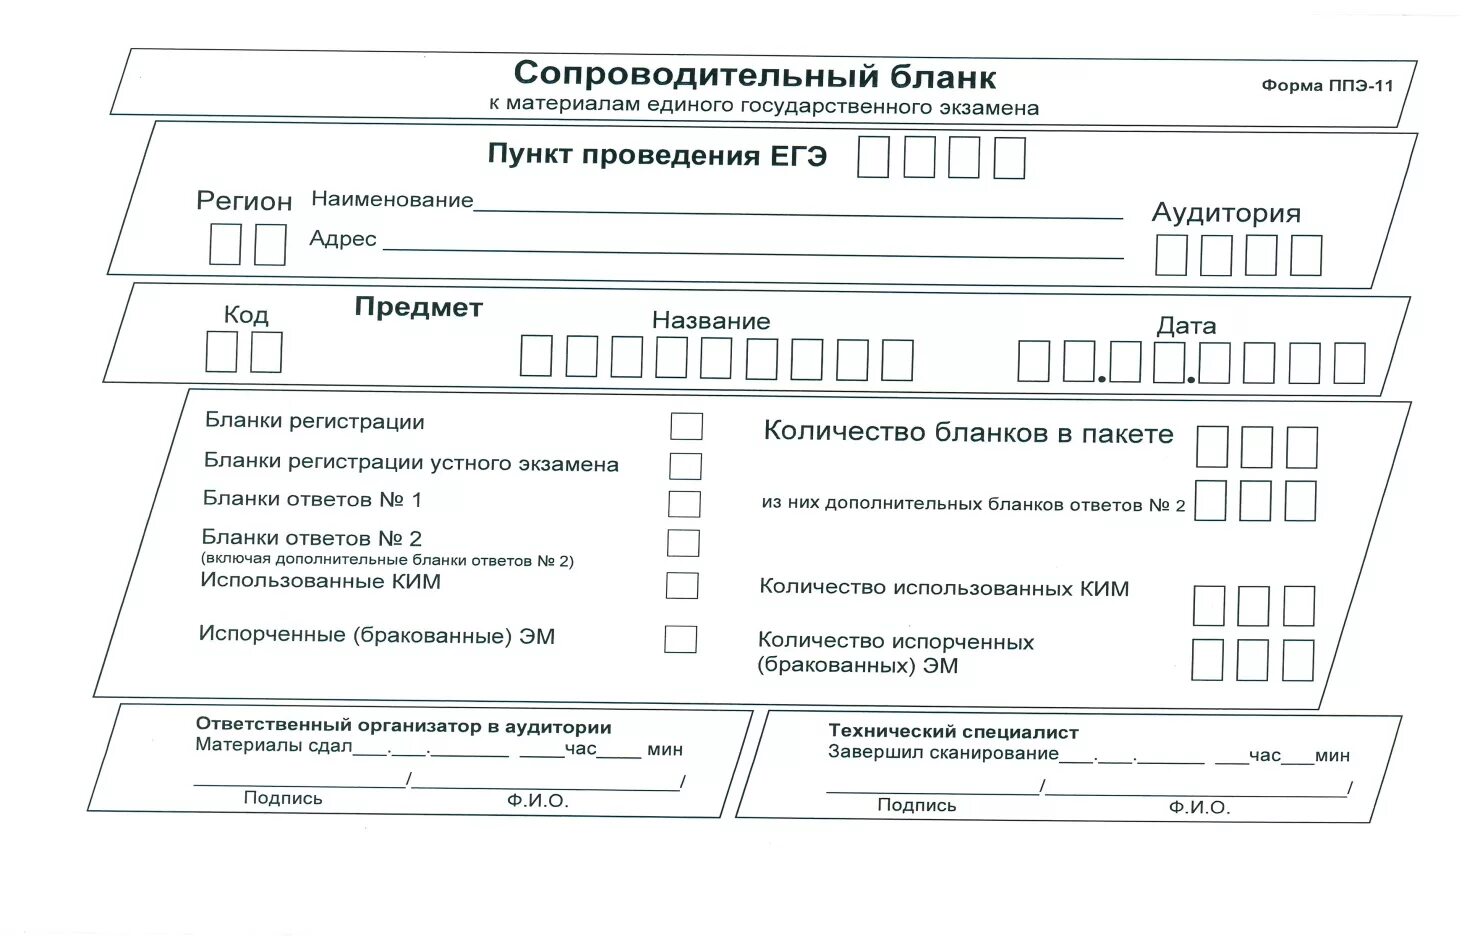 Рцои результаты собеседования 2024 московская область. Форма ППЭ -11 ГВЭ 11. Сопроводительный бланк к материалам ЕГЭ форма 11-ППЭ. Сопроводительный бланк форма 11-ППЭ. Форма ППЭ 11 доставочные возвратные пакеты.